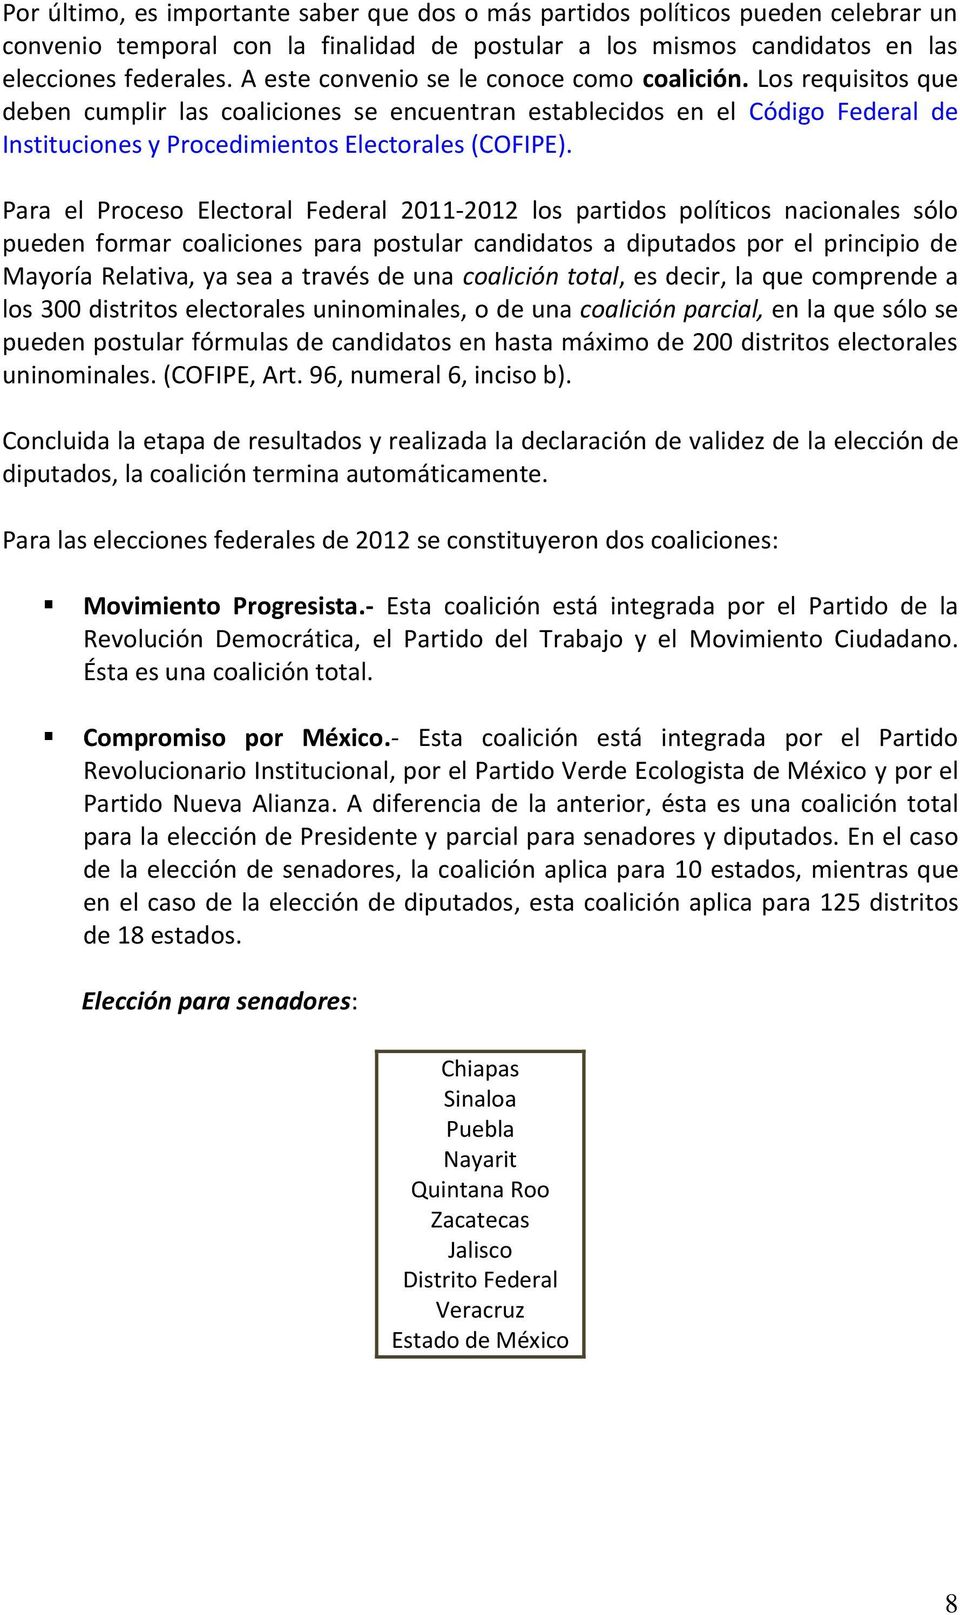 Para el Proceso Electoral Federal 2011-2012 los partidos políticos nacionales sólo pueden formar coaliciones para postular candidatos a diputados por el principio de Mayoría Relativa, ya sea a través